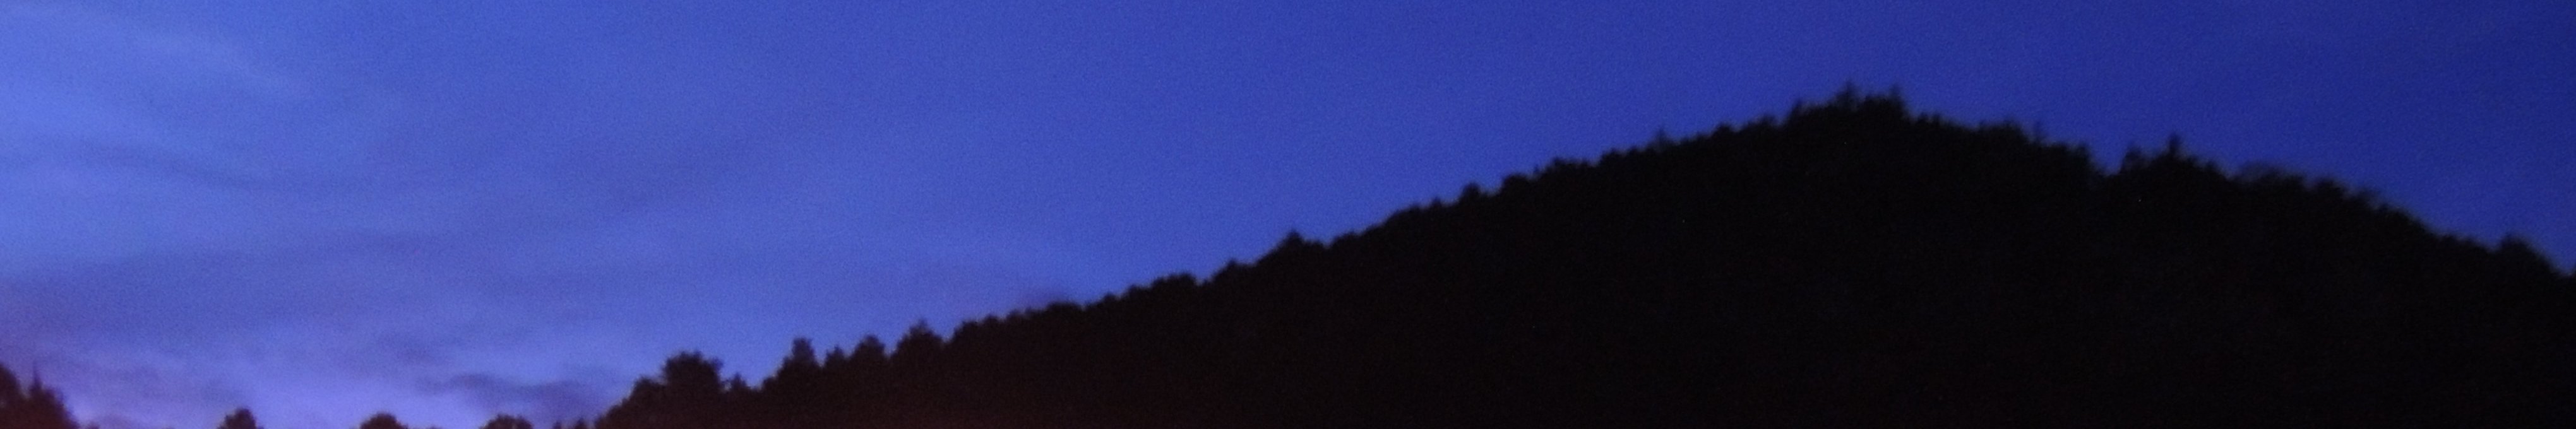 初期夜間急病診療(写真:東白川村の風景/夕暮れ時の空と山)